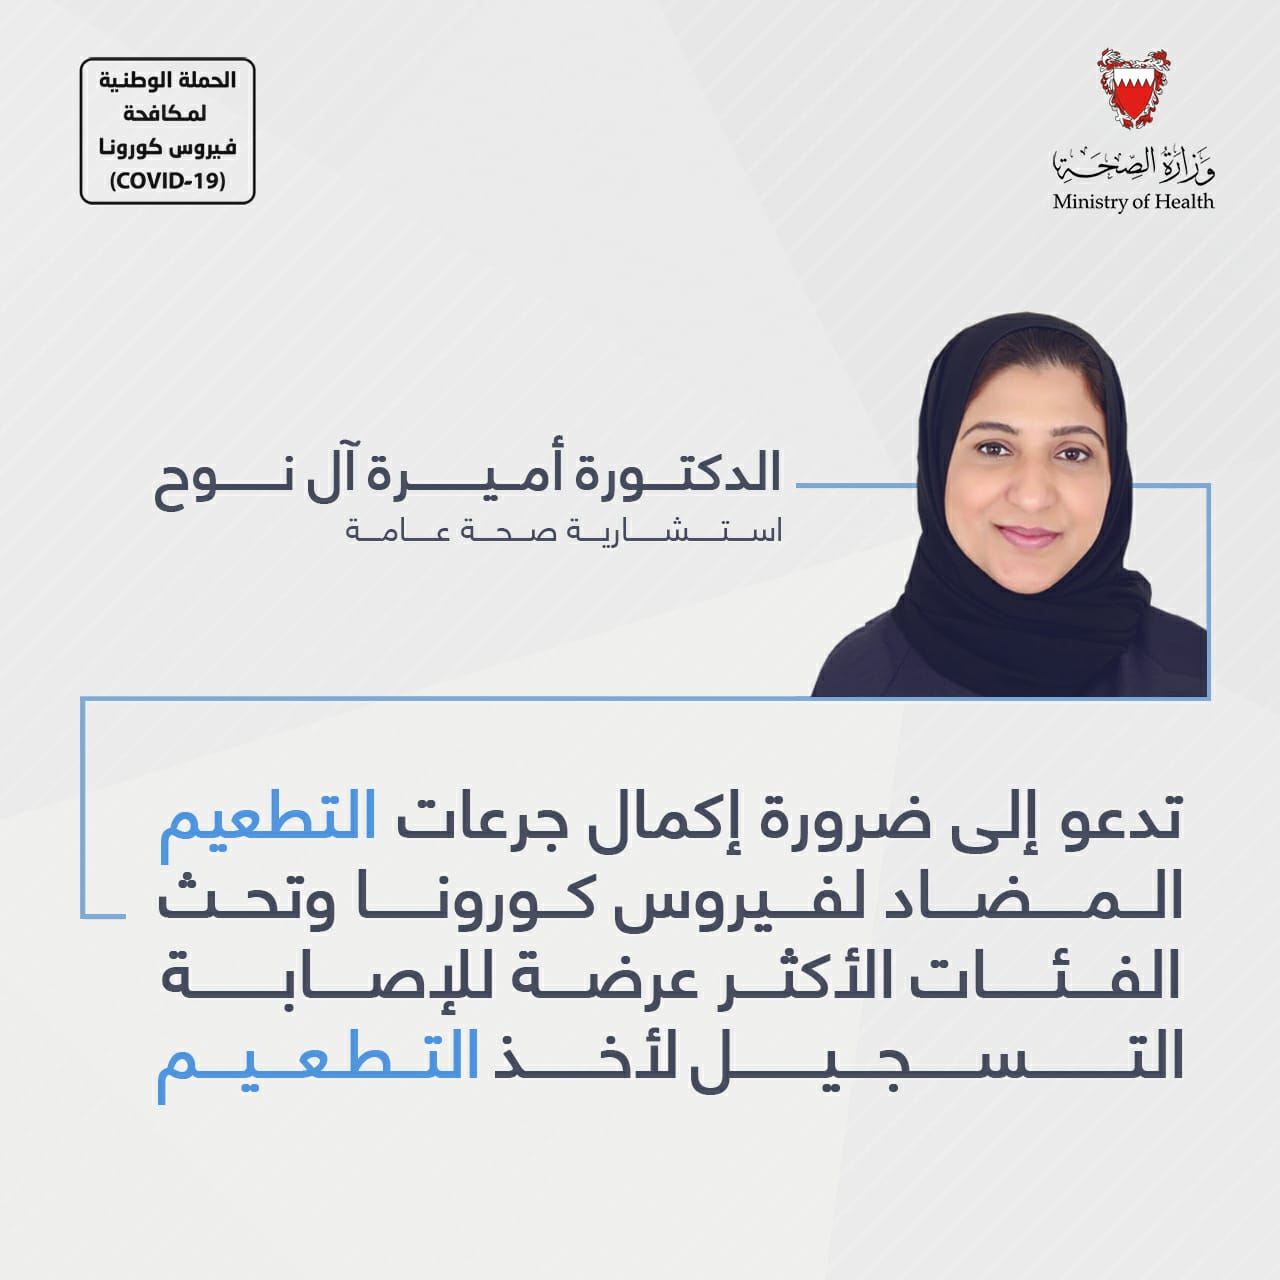 د. أميرة آل نوح تدعو إلى ضرورة إكمال جرعات التطعيم المضاد لفيروس كورونا وتحث الفئات الأكثر عرضة للإصابة التسجيل لأخذ التطعيم   